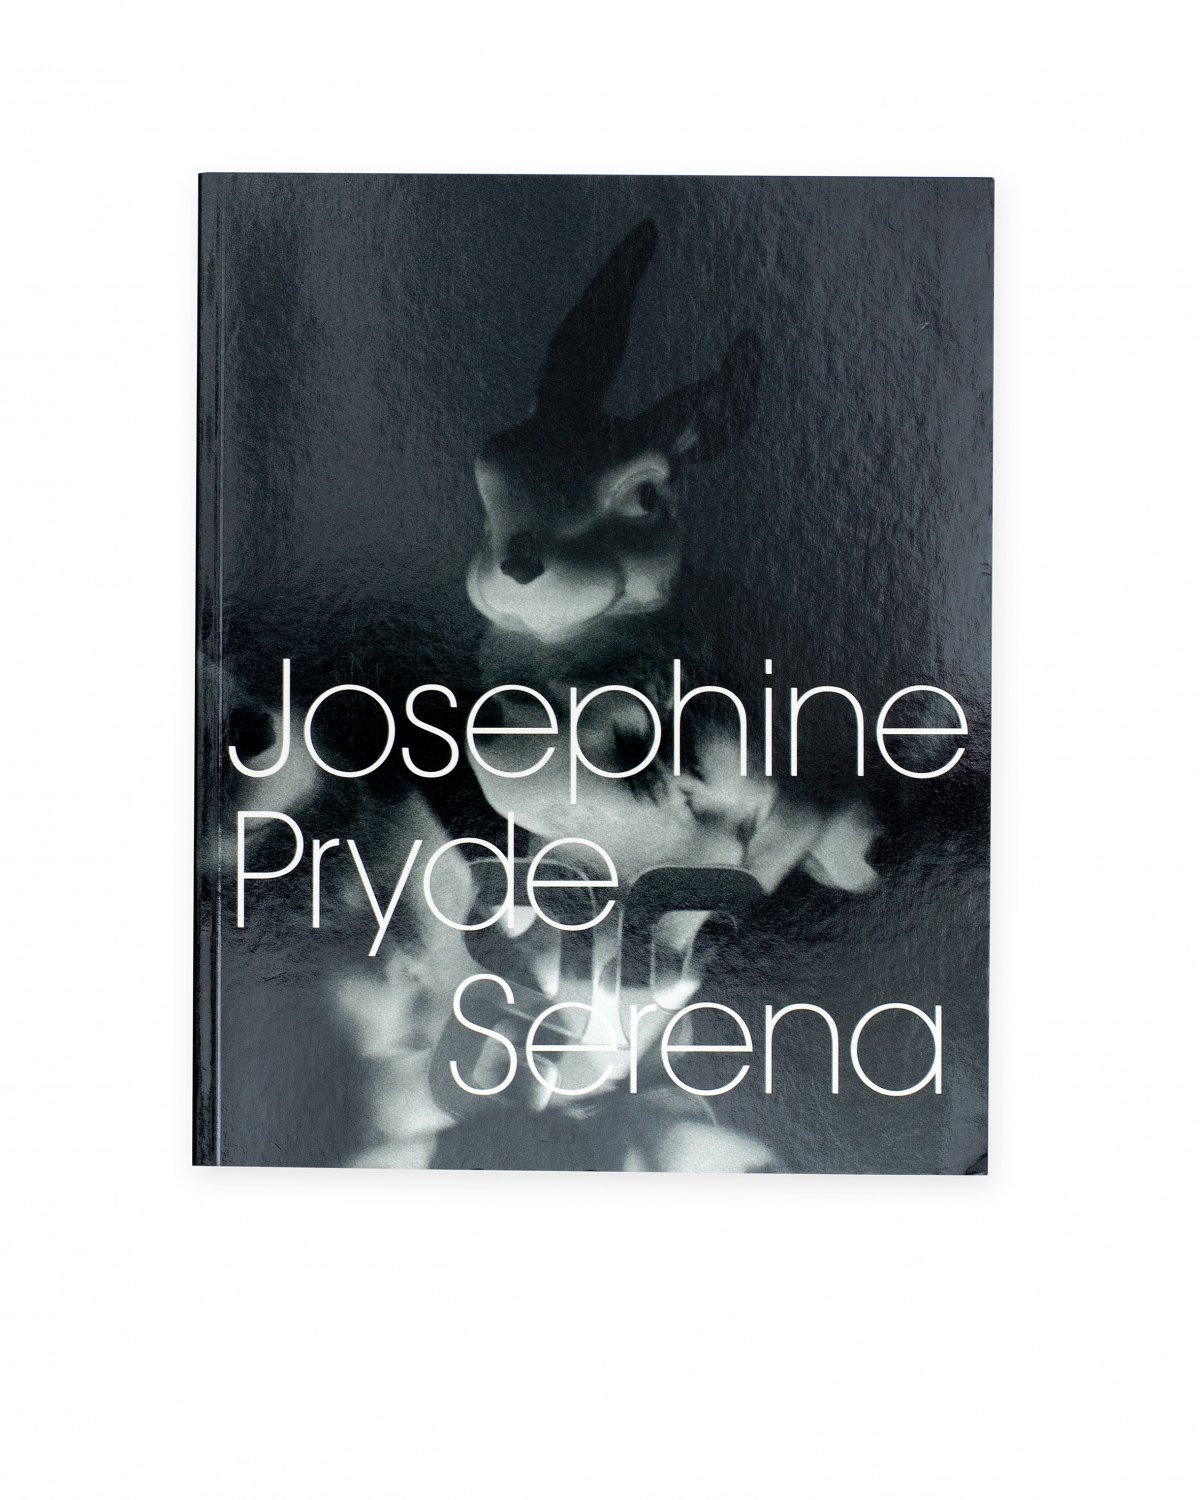 Josephine Pryde, Josephine Pryde  Serena, Catalogue, Kunstverein, Braunschweig 2001, 71 p.  ISBN 978-3-92927-034-1